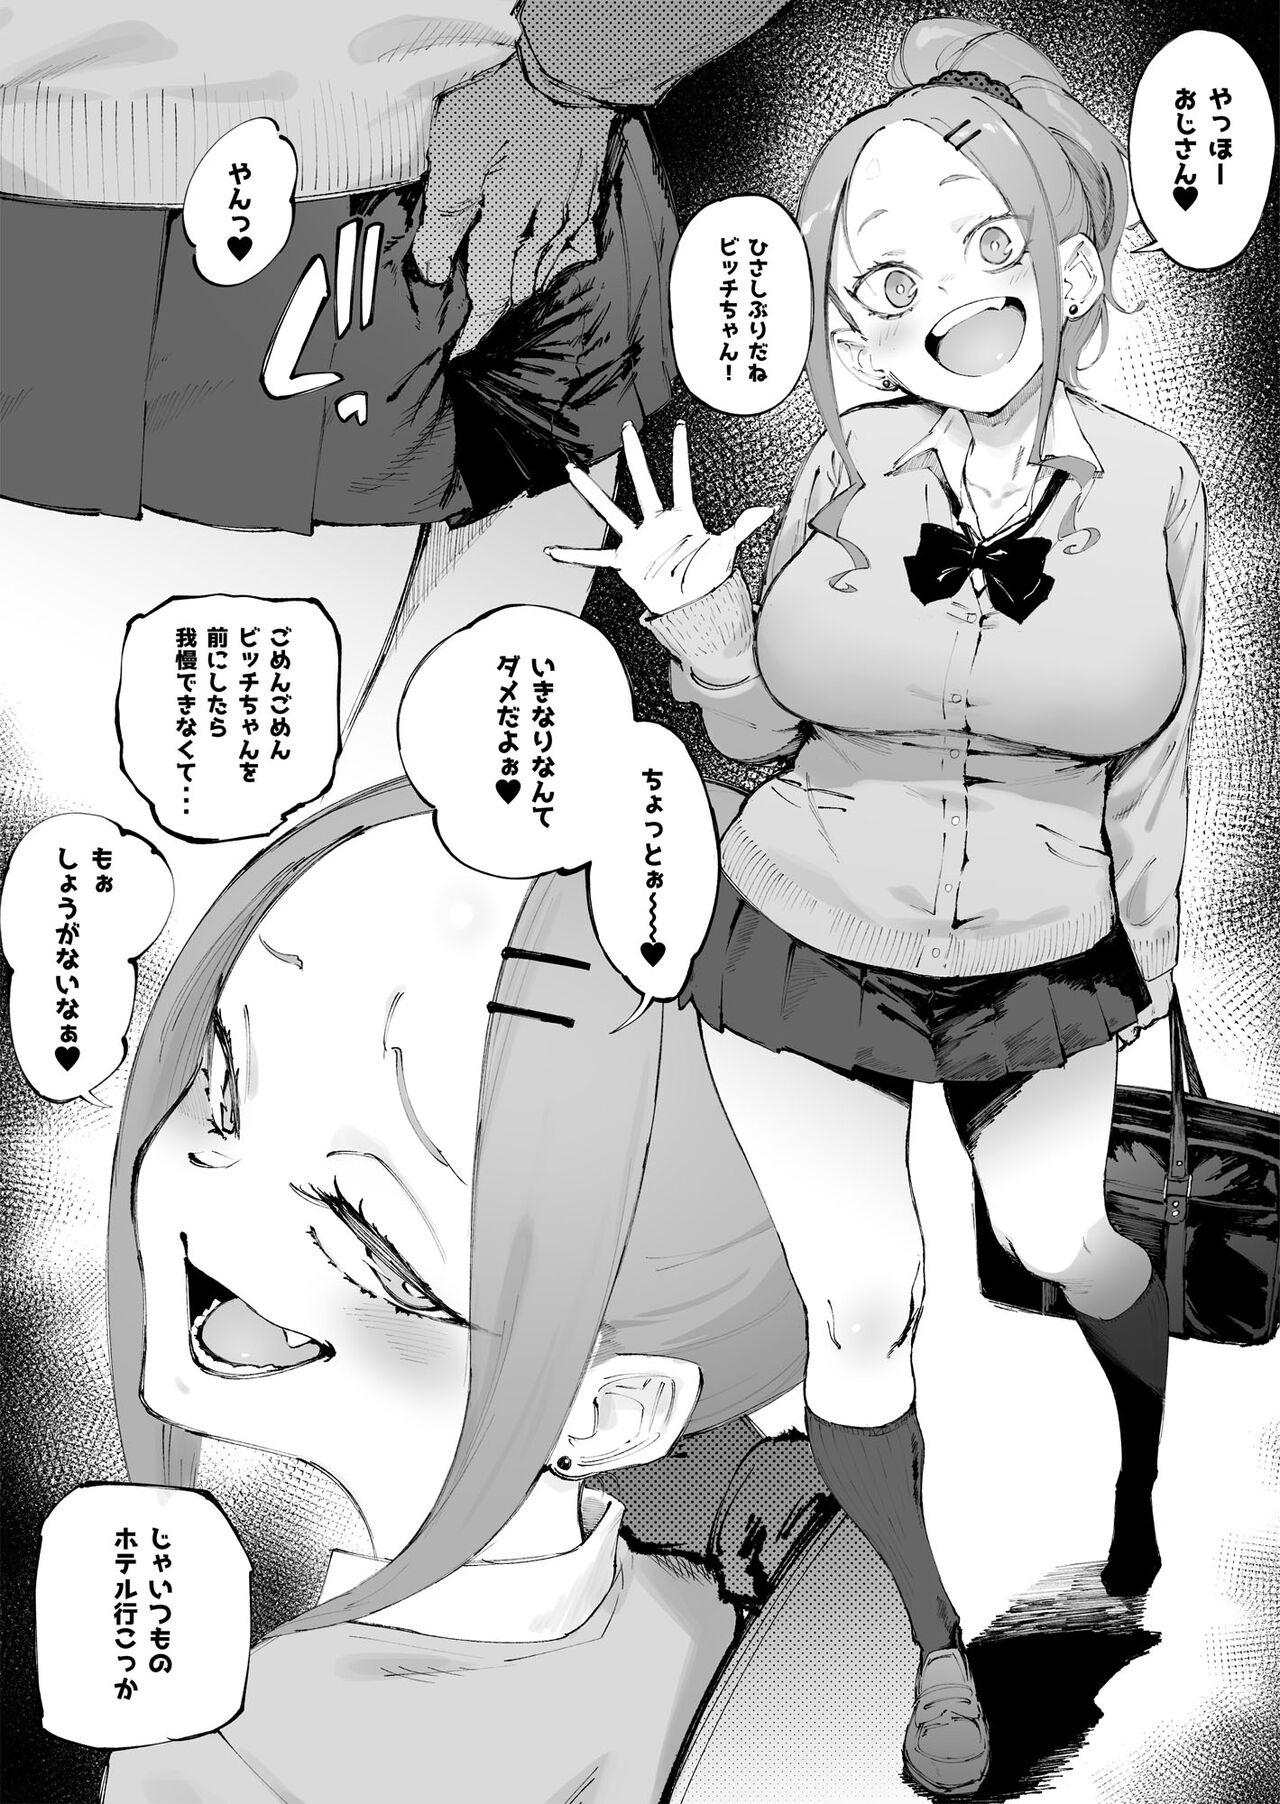 Couple Uchi no Ko Manga Sono 2 - Original Chastity - Page 1